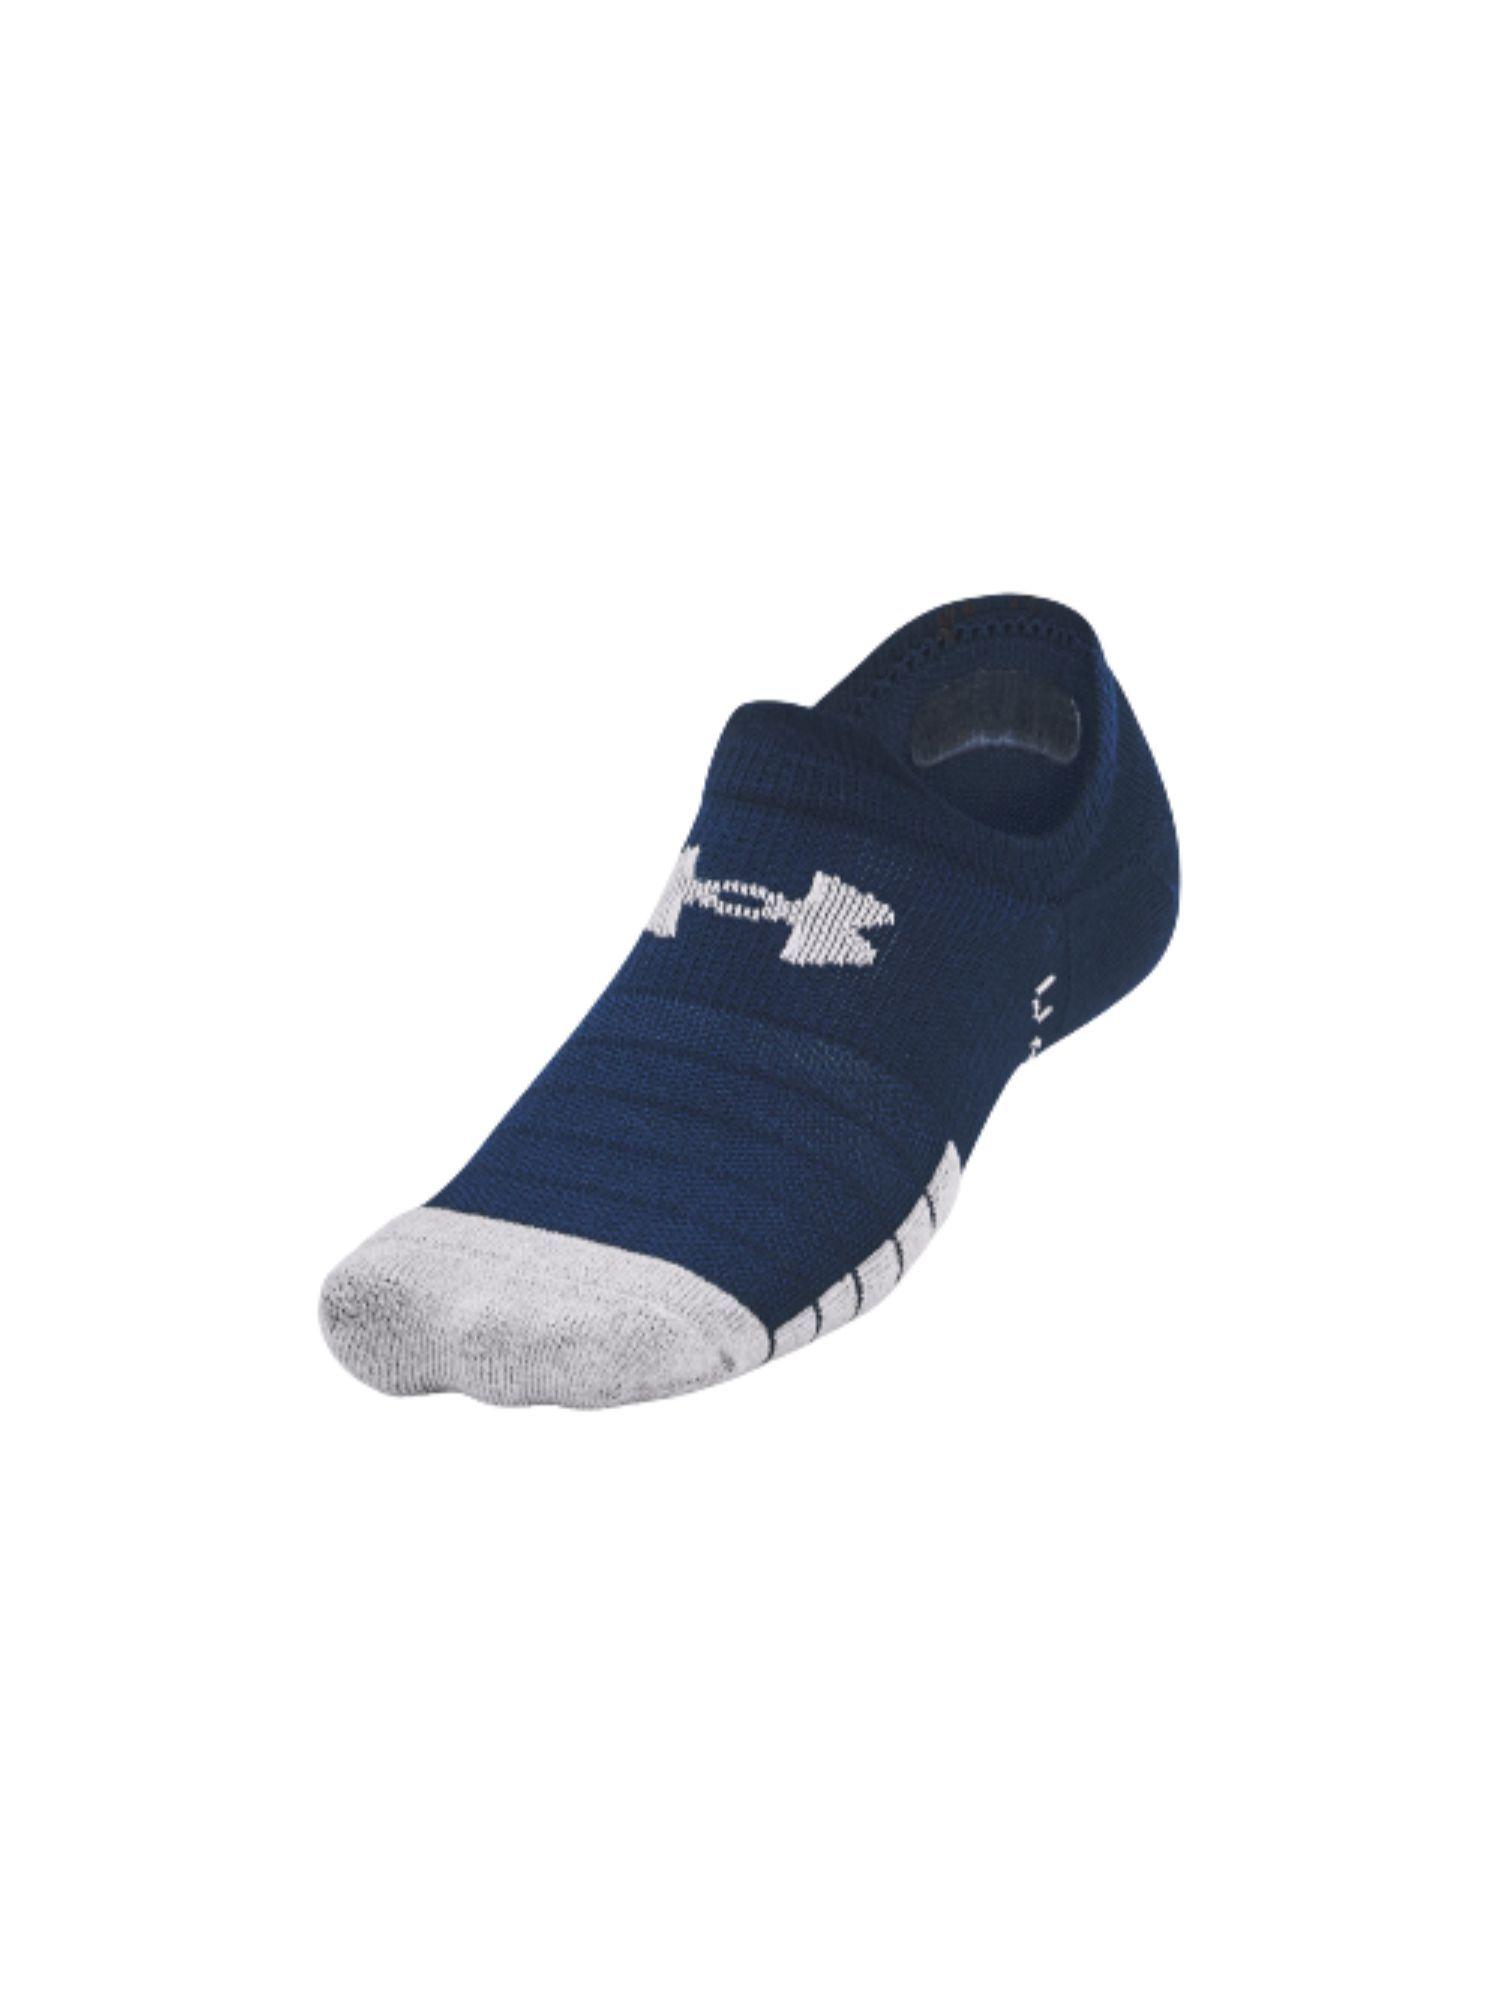 unisex heat gear ultra low tab socks - navy blue (pack of 3)